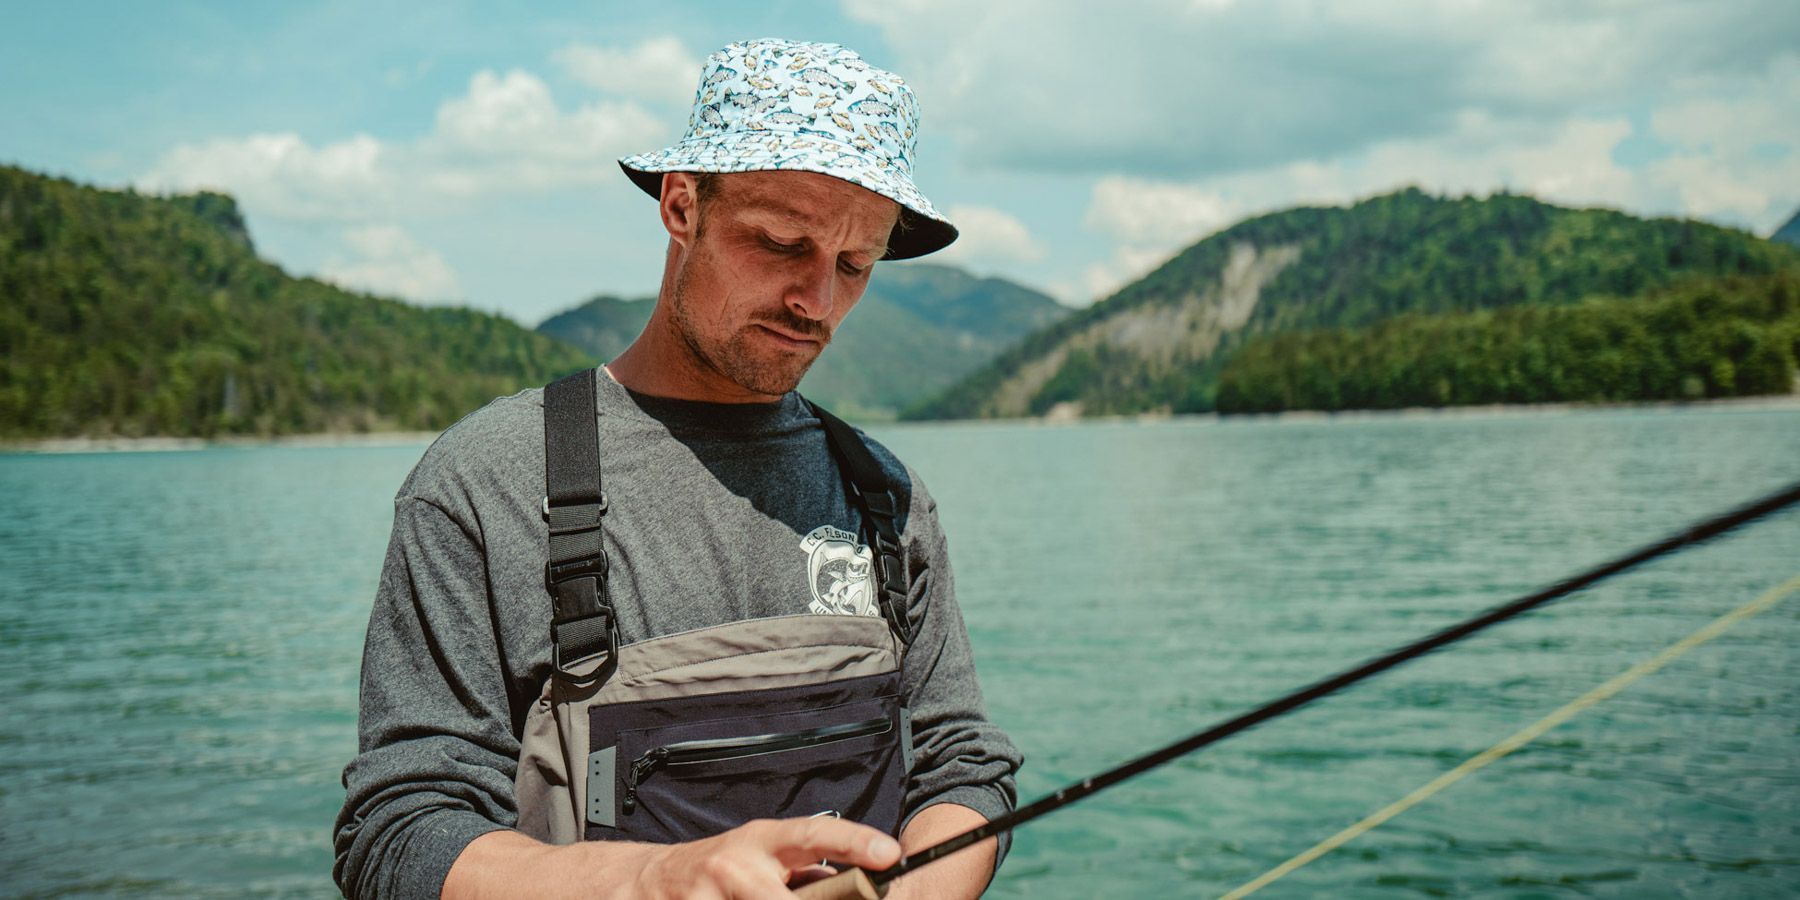 Shop Fishing Hats for Men